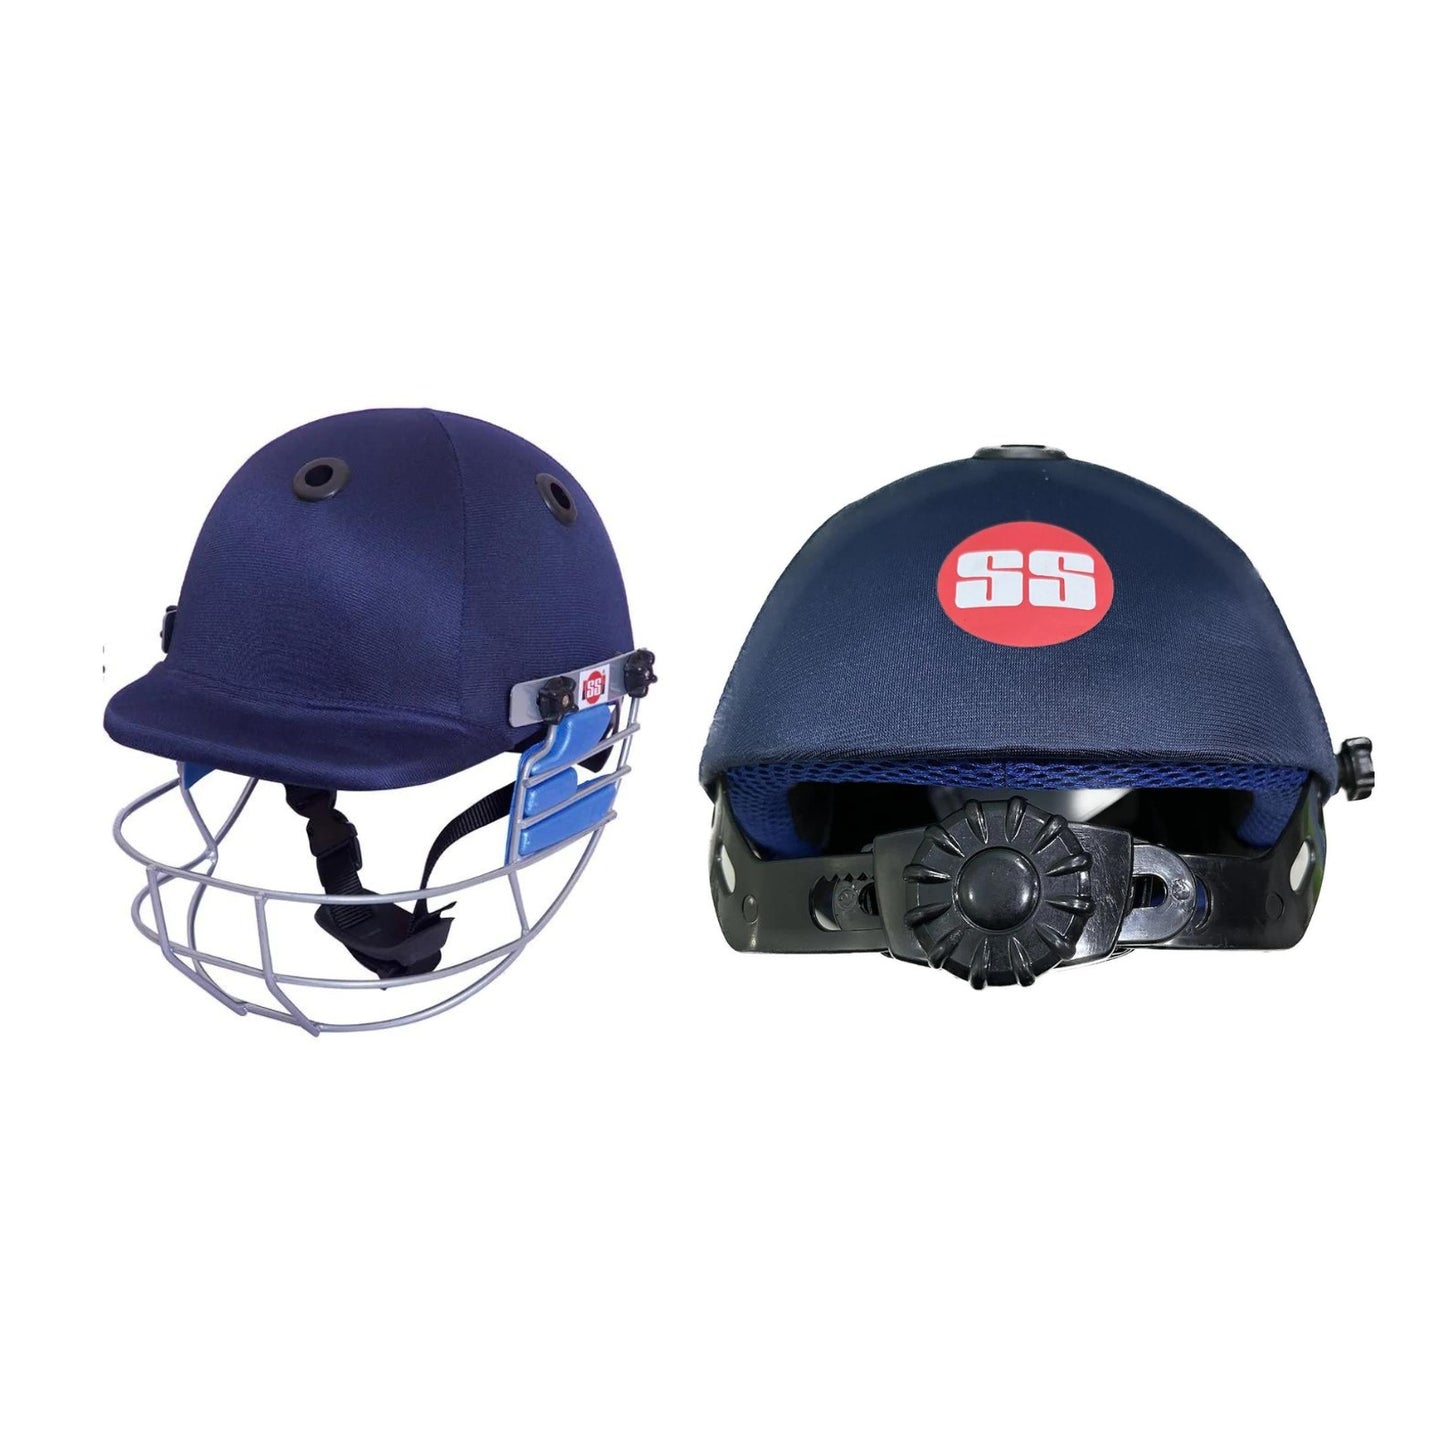 SS Matrix Cricket Helmet - Junior and Senior